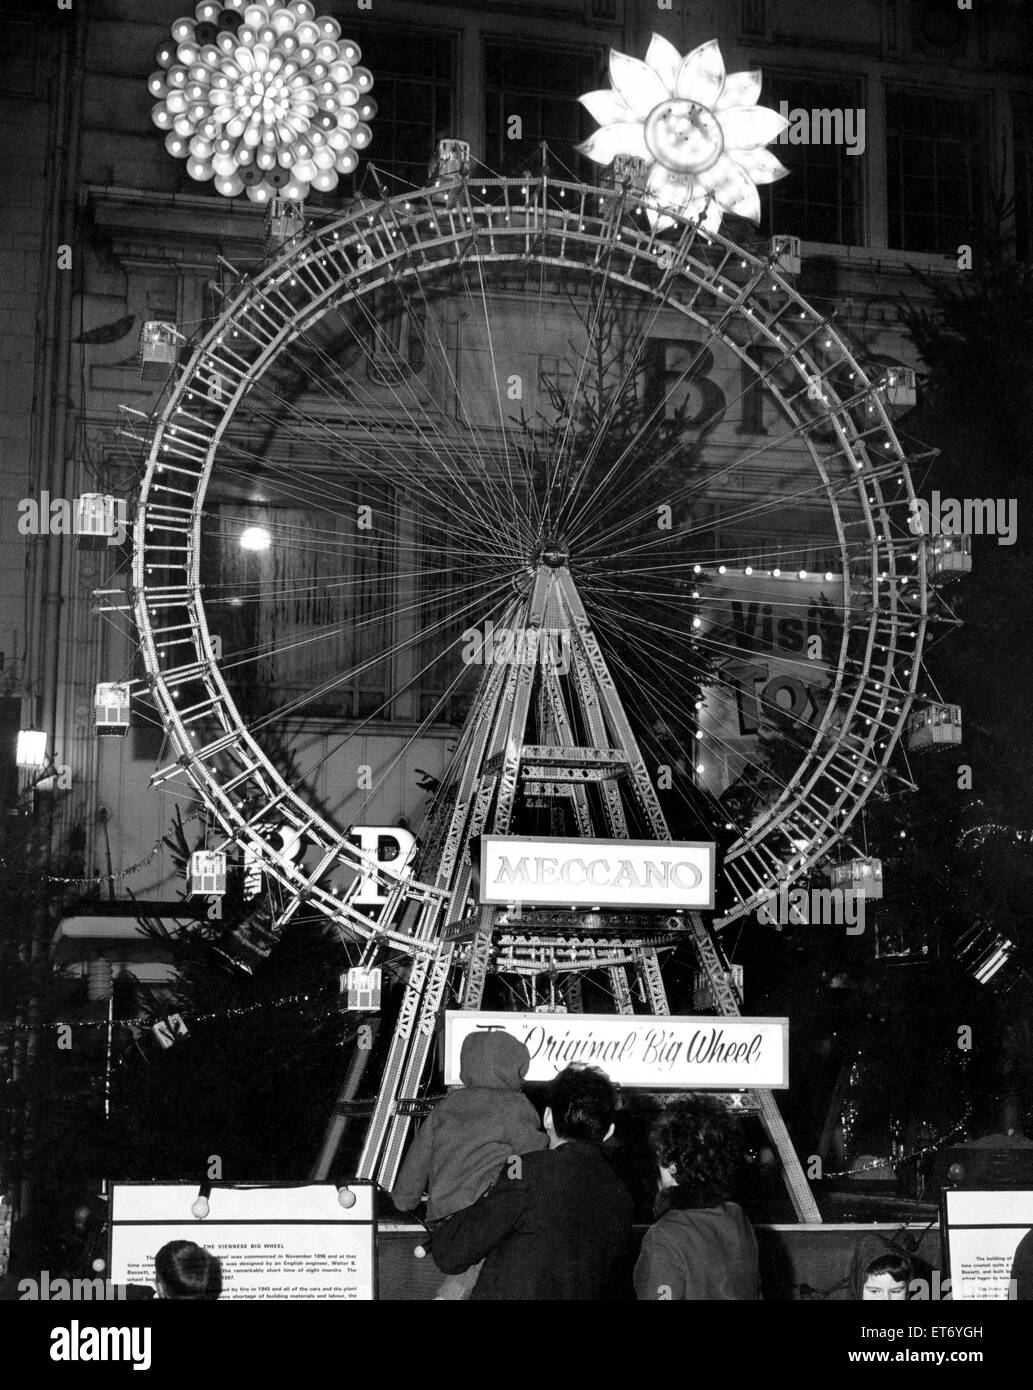 La replica della viennese di grande ruota in Clayton Square, durante il tempo di Natale. Liverpool, Merseyside. Un avviso che dà technicla dati per questa replica ha tutte le sue misurazioni in metri. 19 dicembre 1966. Foto Stock